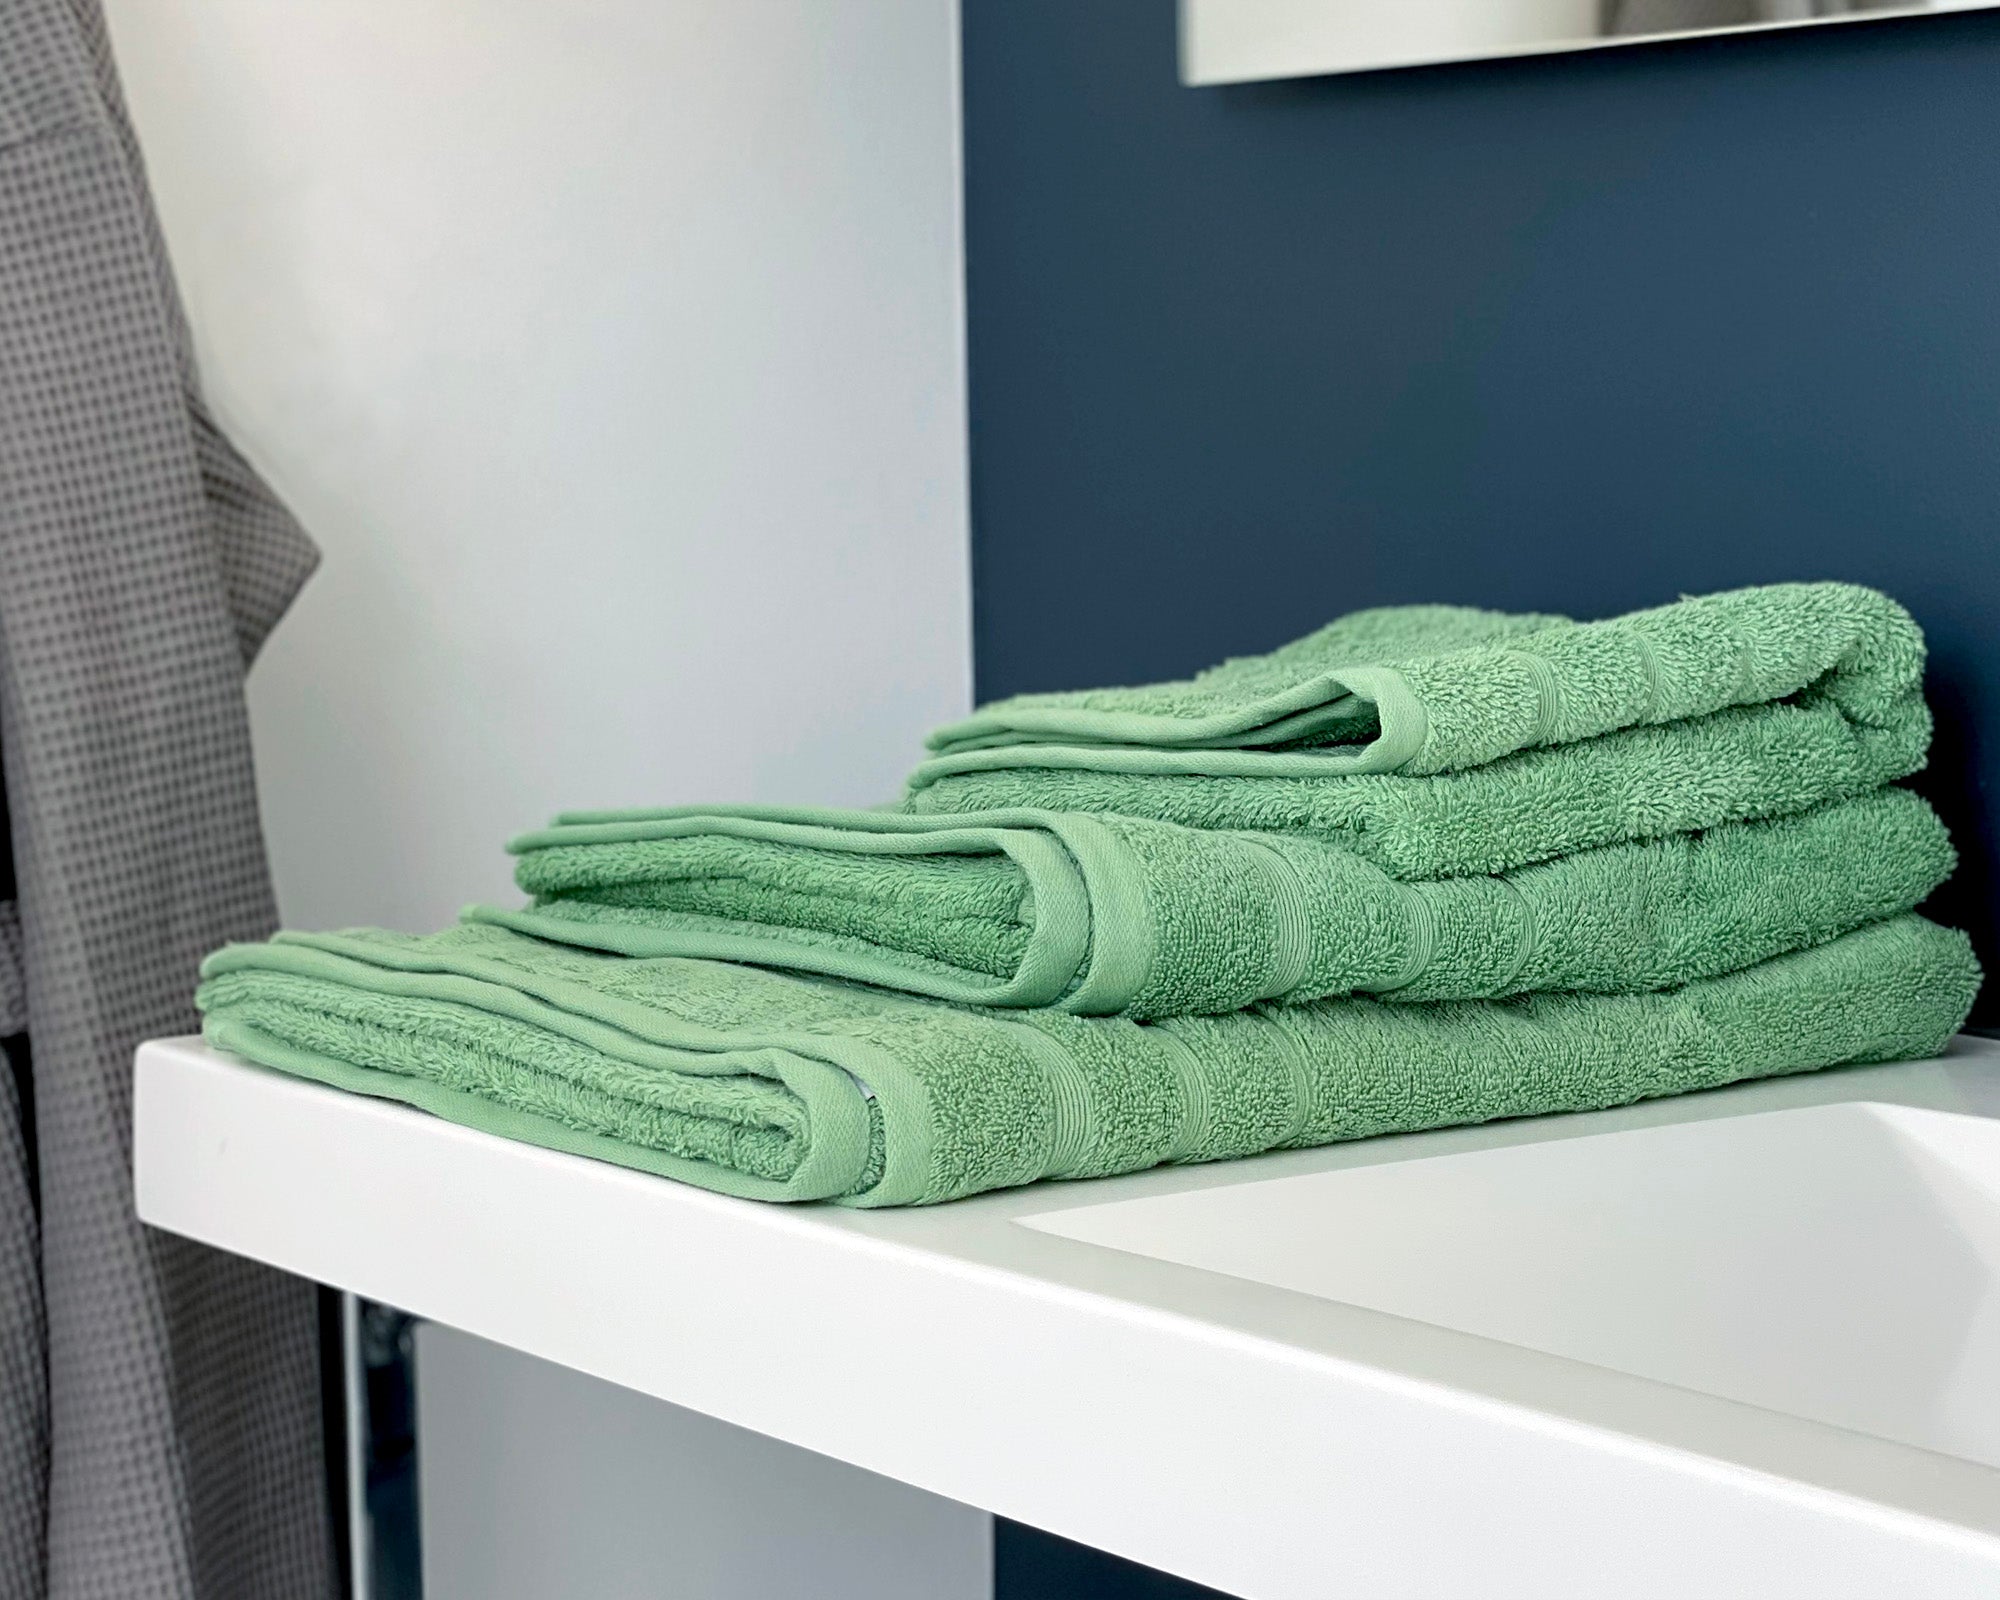 Tre økologiske grønne håndklæder ligger på vasken i et badeværelse. 